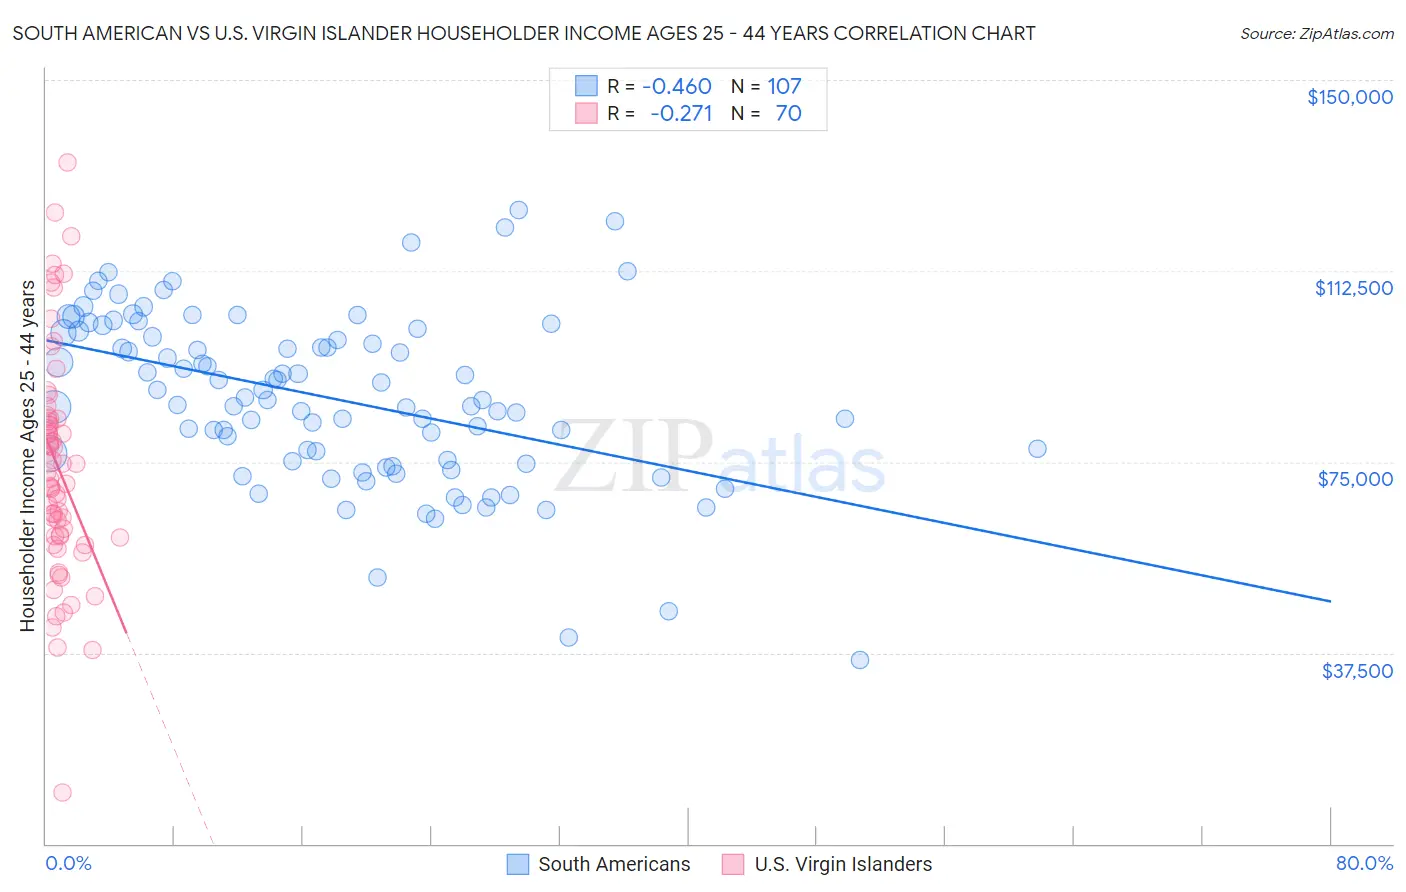 South American vs U.S. Virgin Islander Householder Income Ages 25 - 44 years